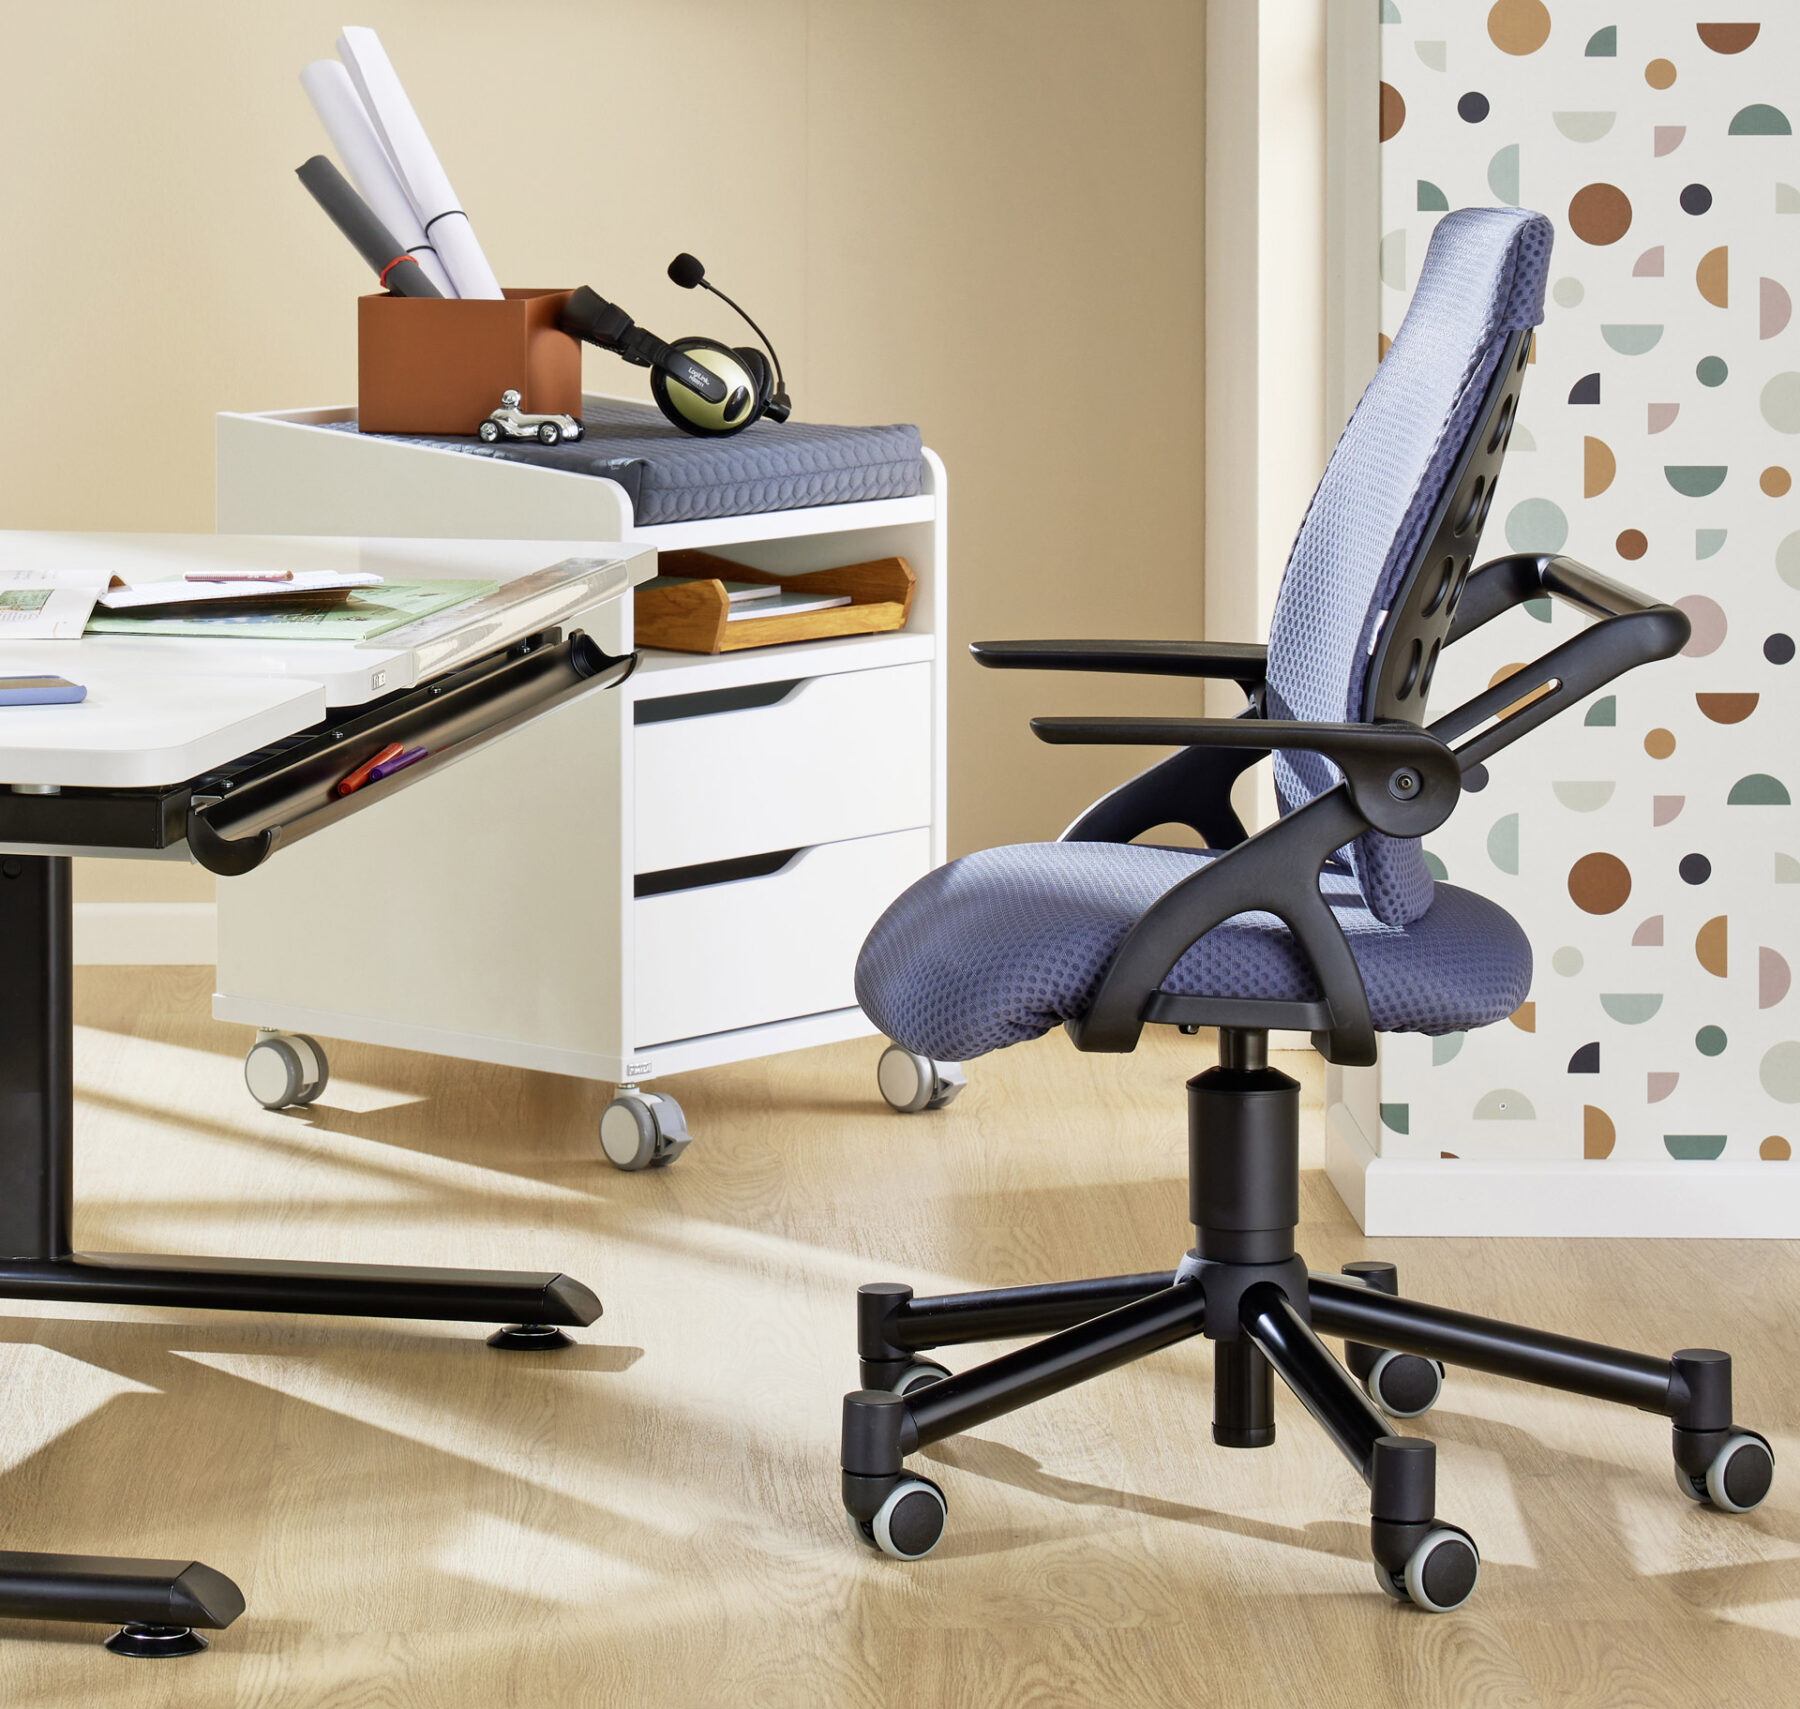 PAIDI Schreibtischstuhl Tio mit grauer Polsterung und lastabhängig gebremsten Sicherheitsdoppelrollen für optimale Mobilität und Schutz.